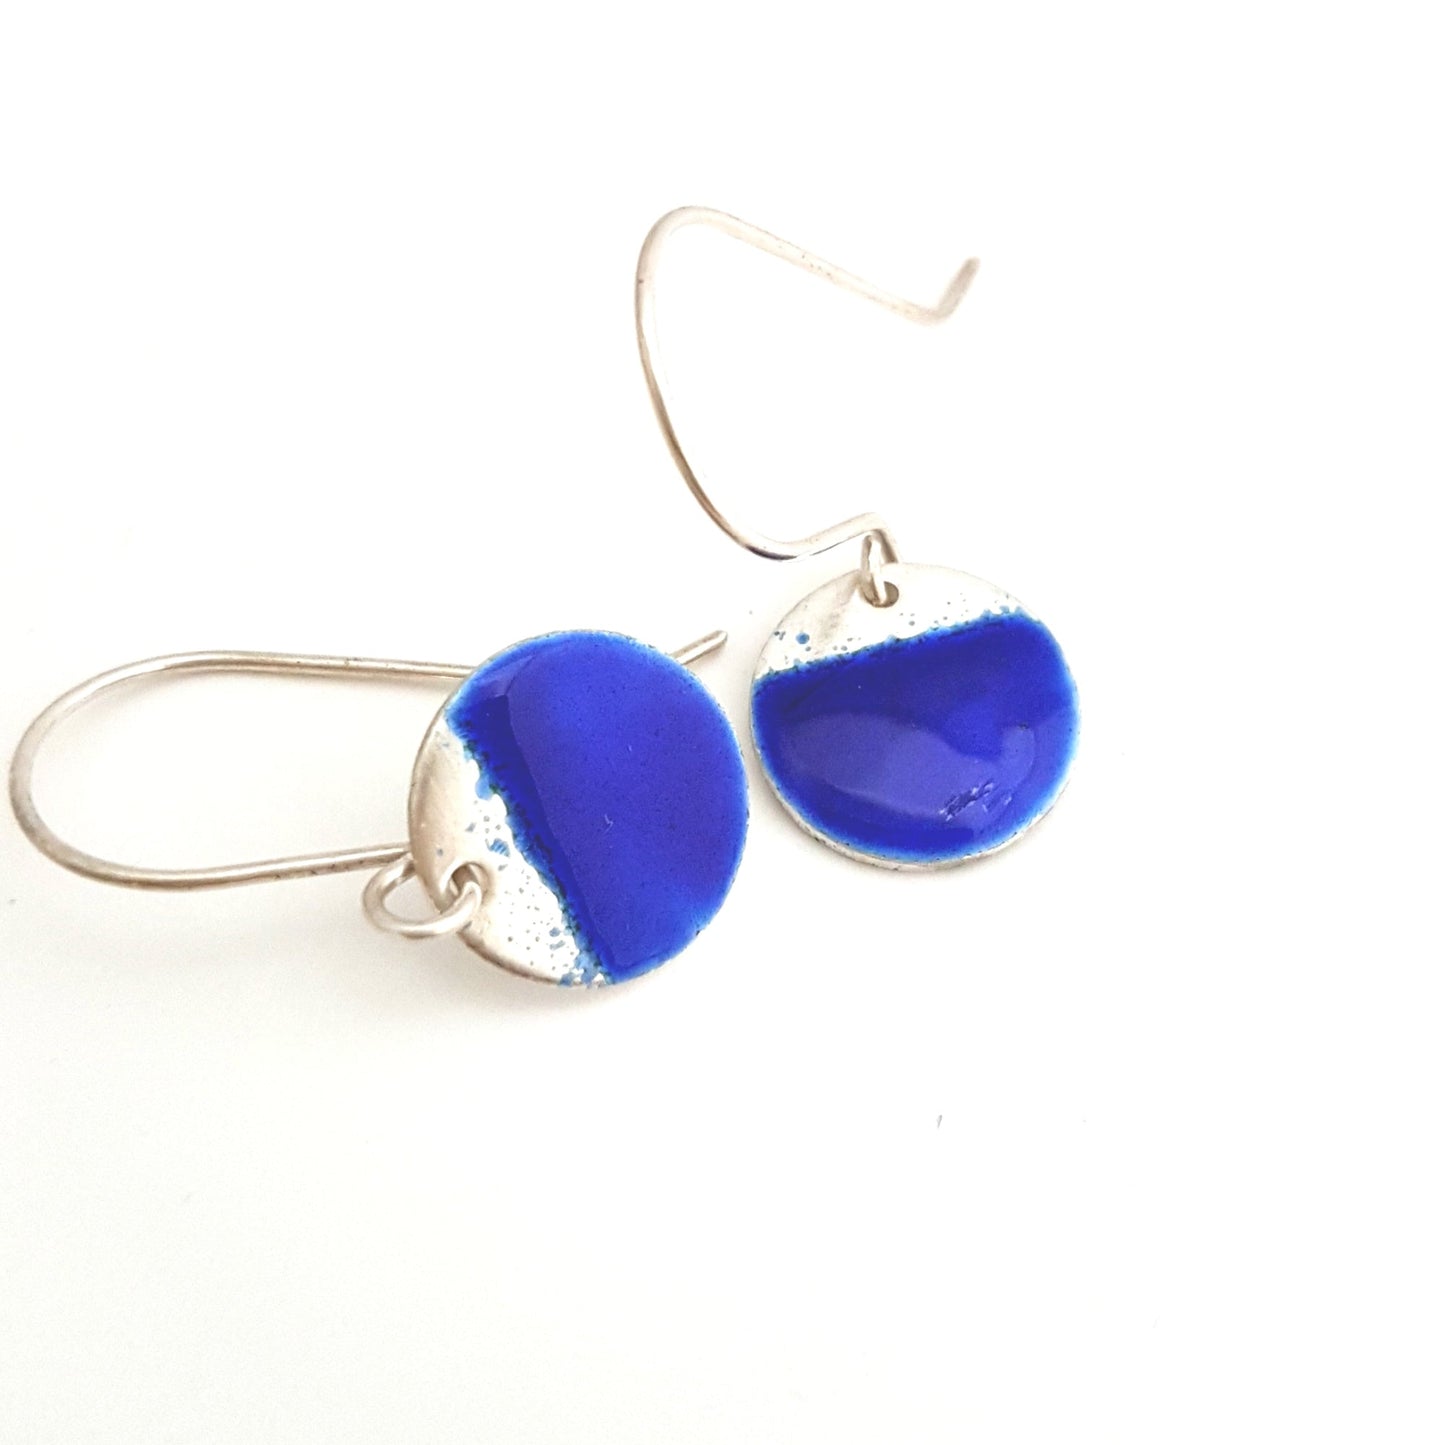 Two Tone Silver Disc Earrings - Blue - MaisyPlum